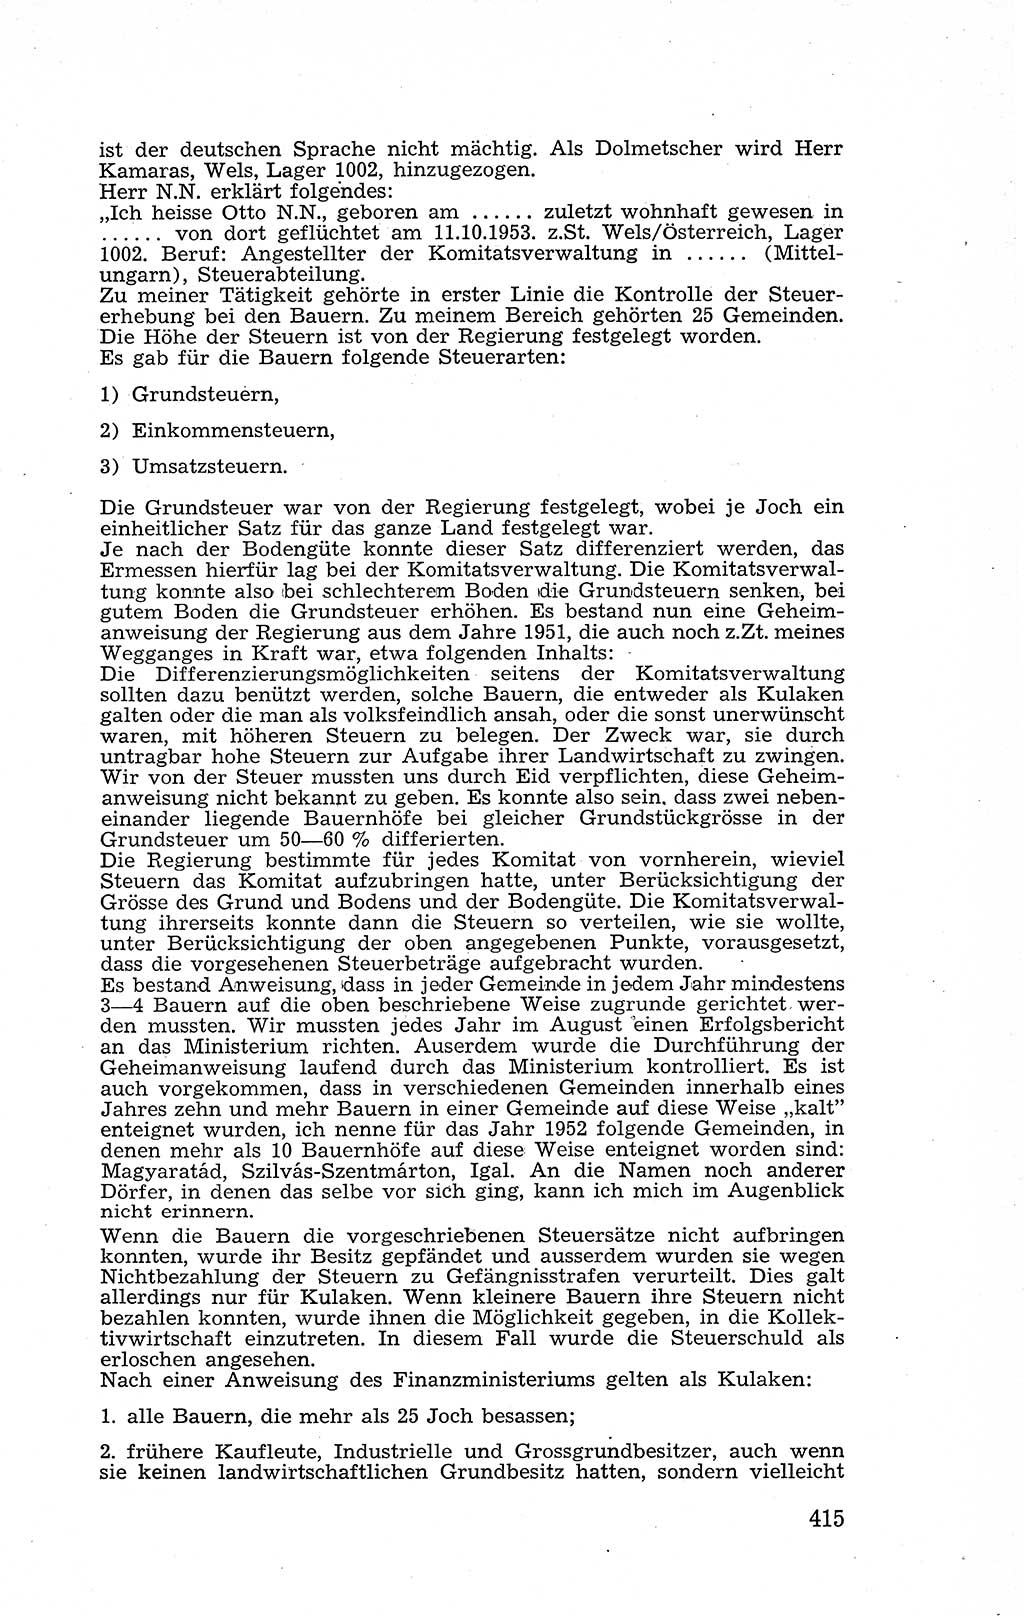 Recht in Fesseln, Dokumente, Internationale Juristen-Kommission [Bundesrepublik Deutschland (BRD)] 1955, Seite 415 (R. Dok. IJK BRD 1955, S. 415)